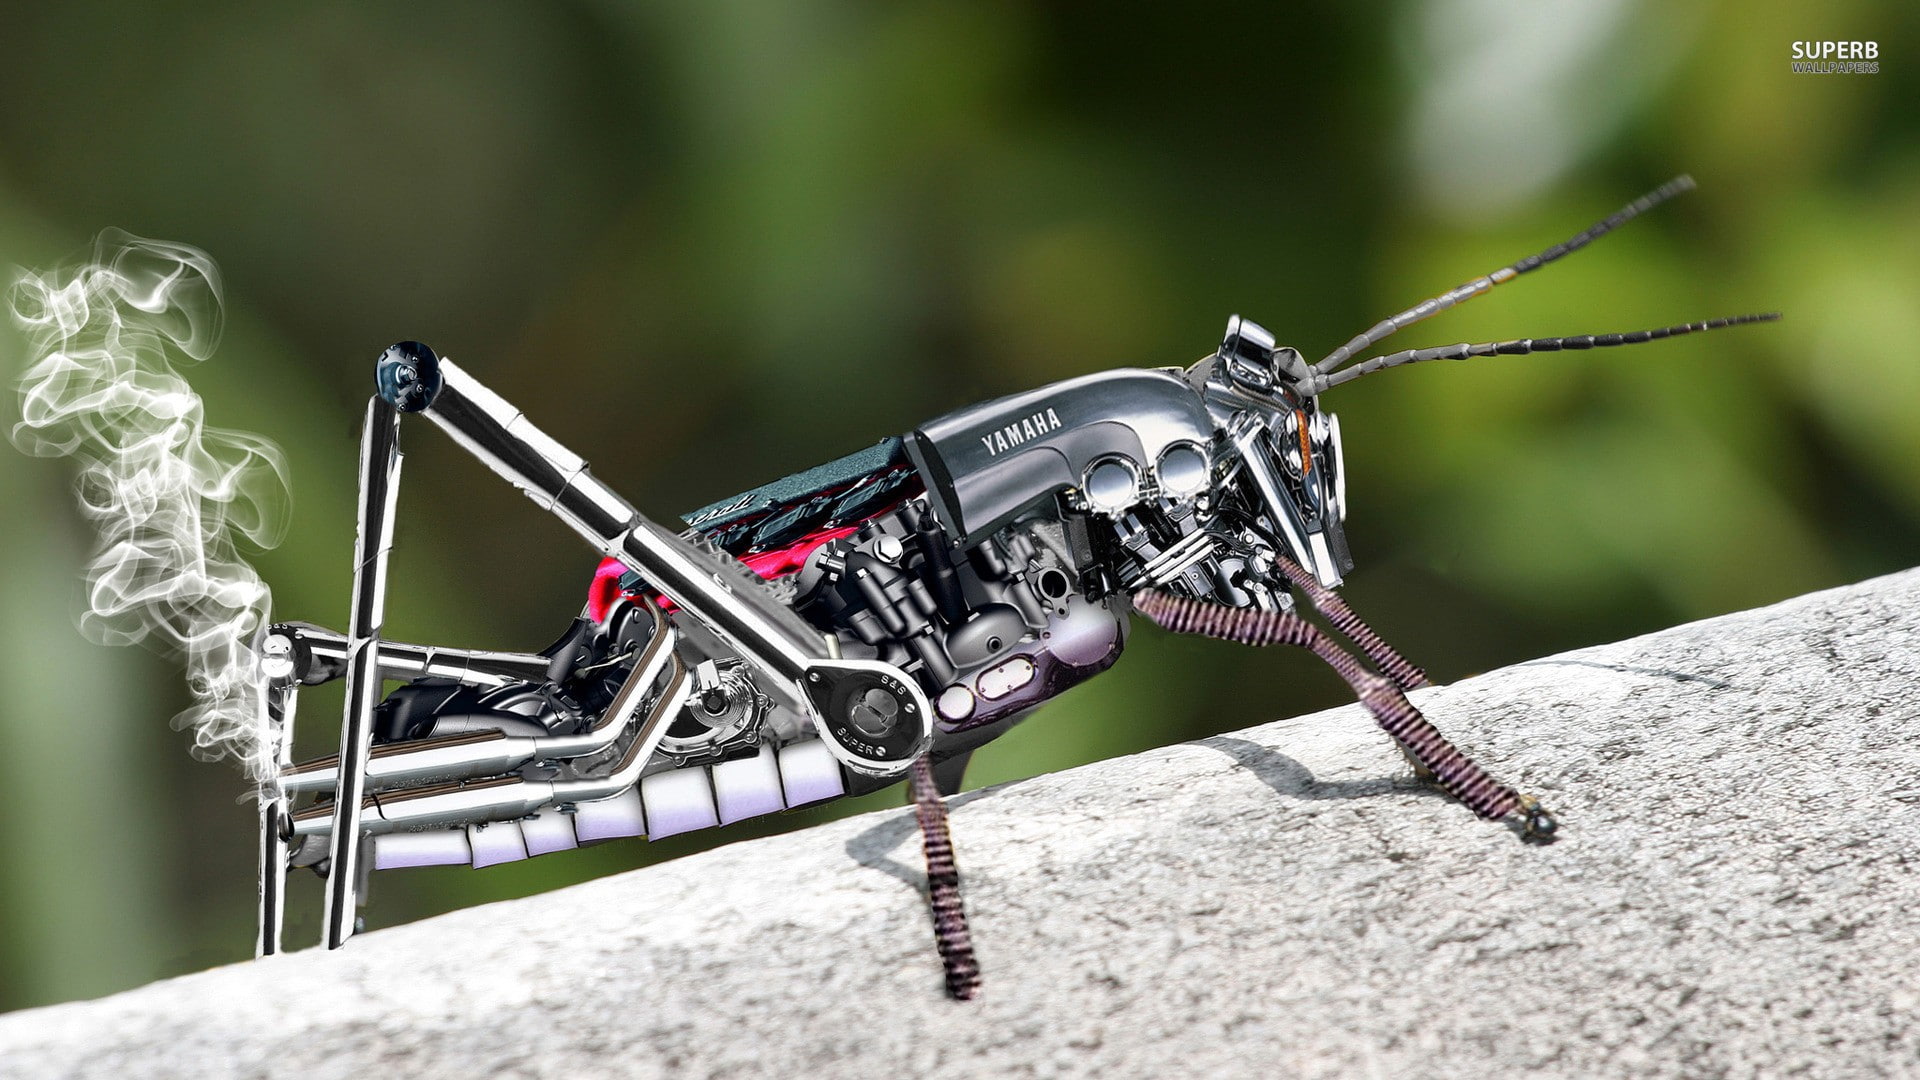 insect, Yamaha, smoke, grasshopper, digital art, robot